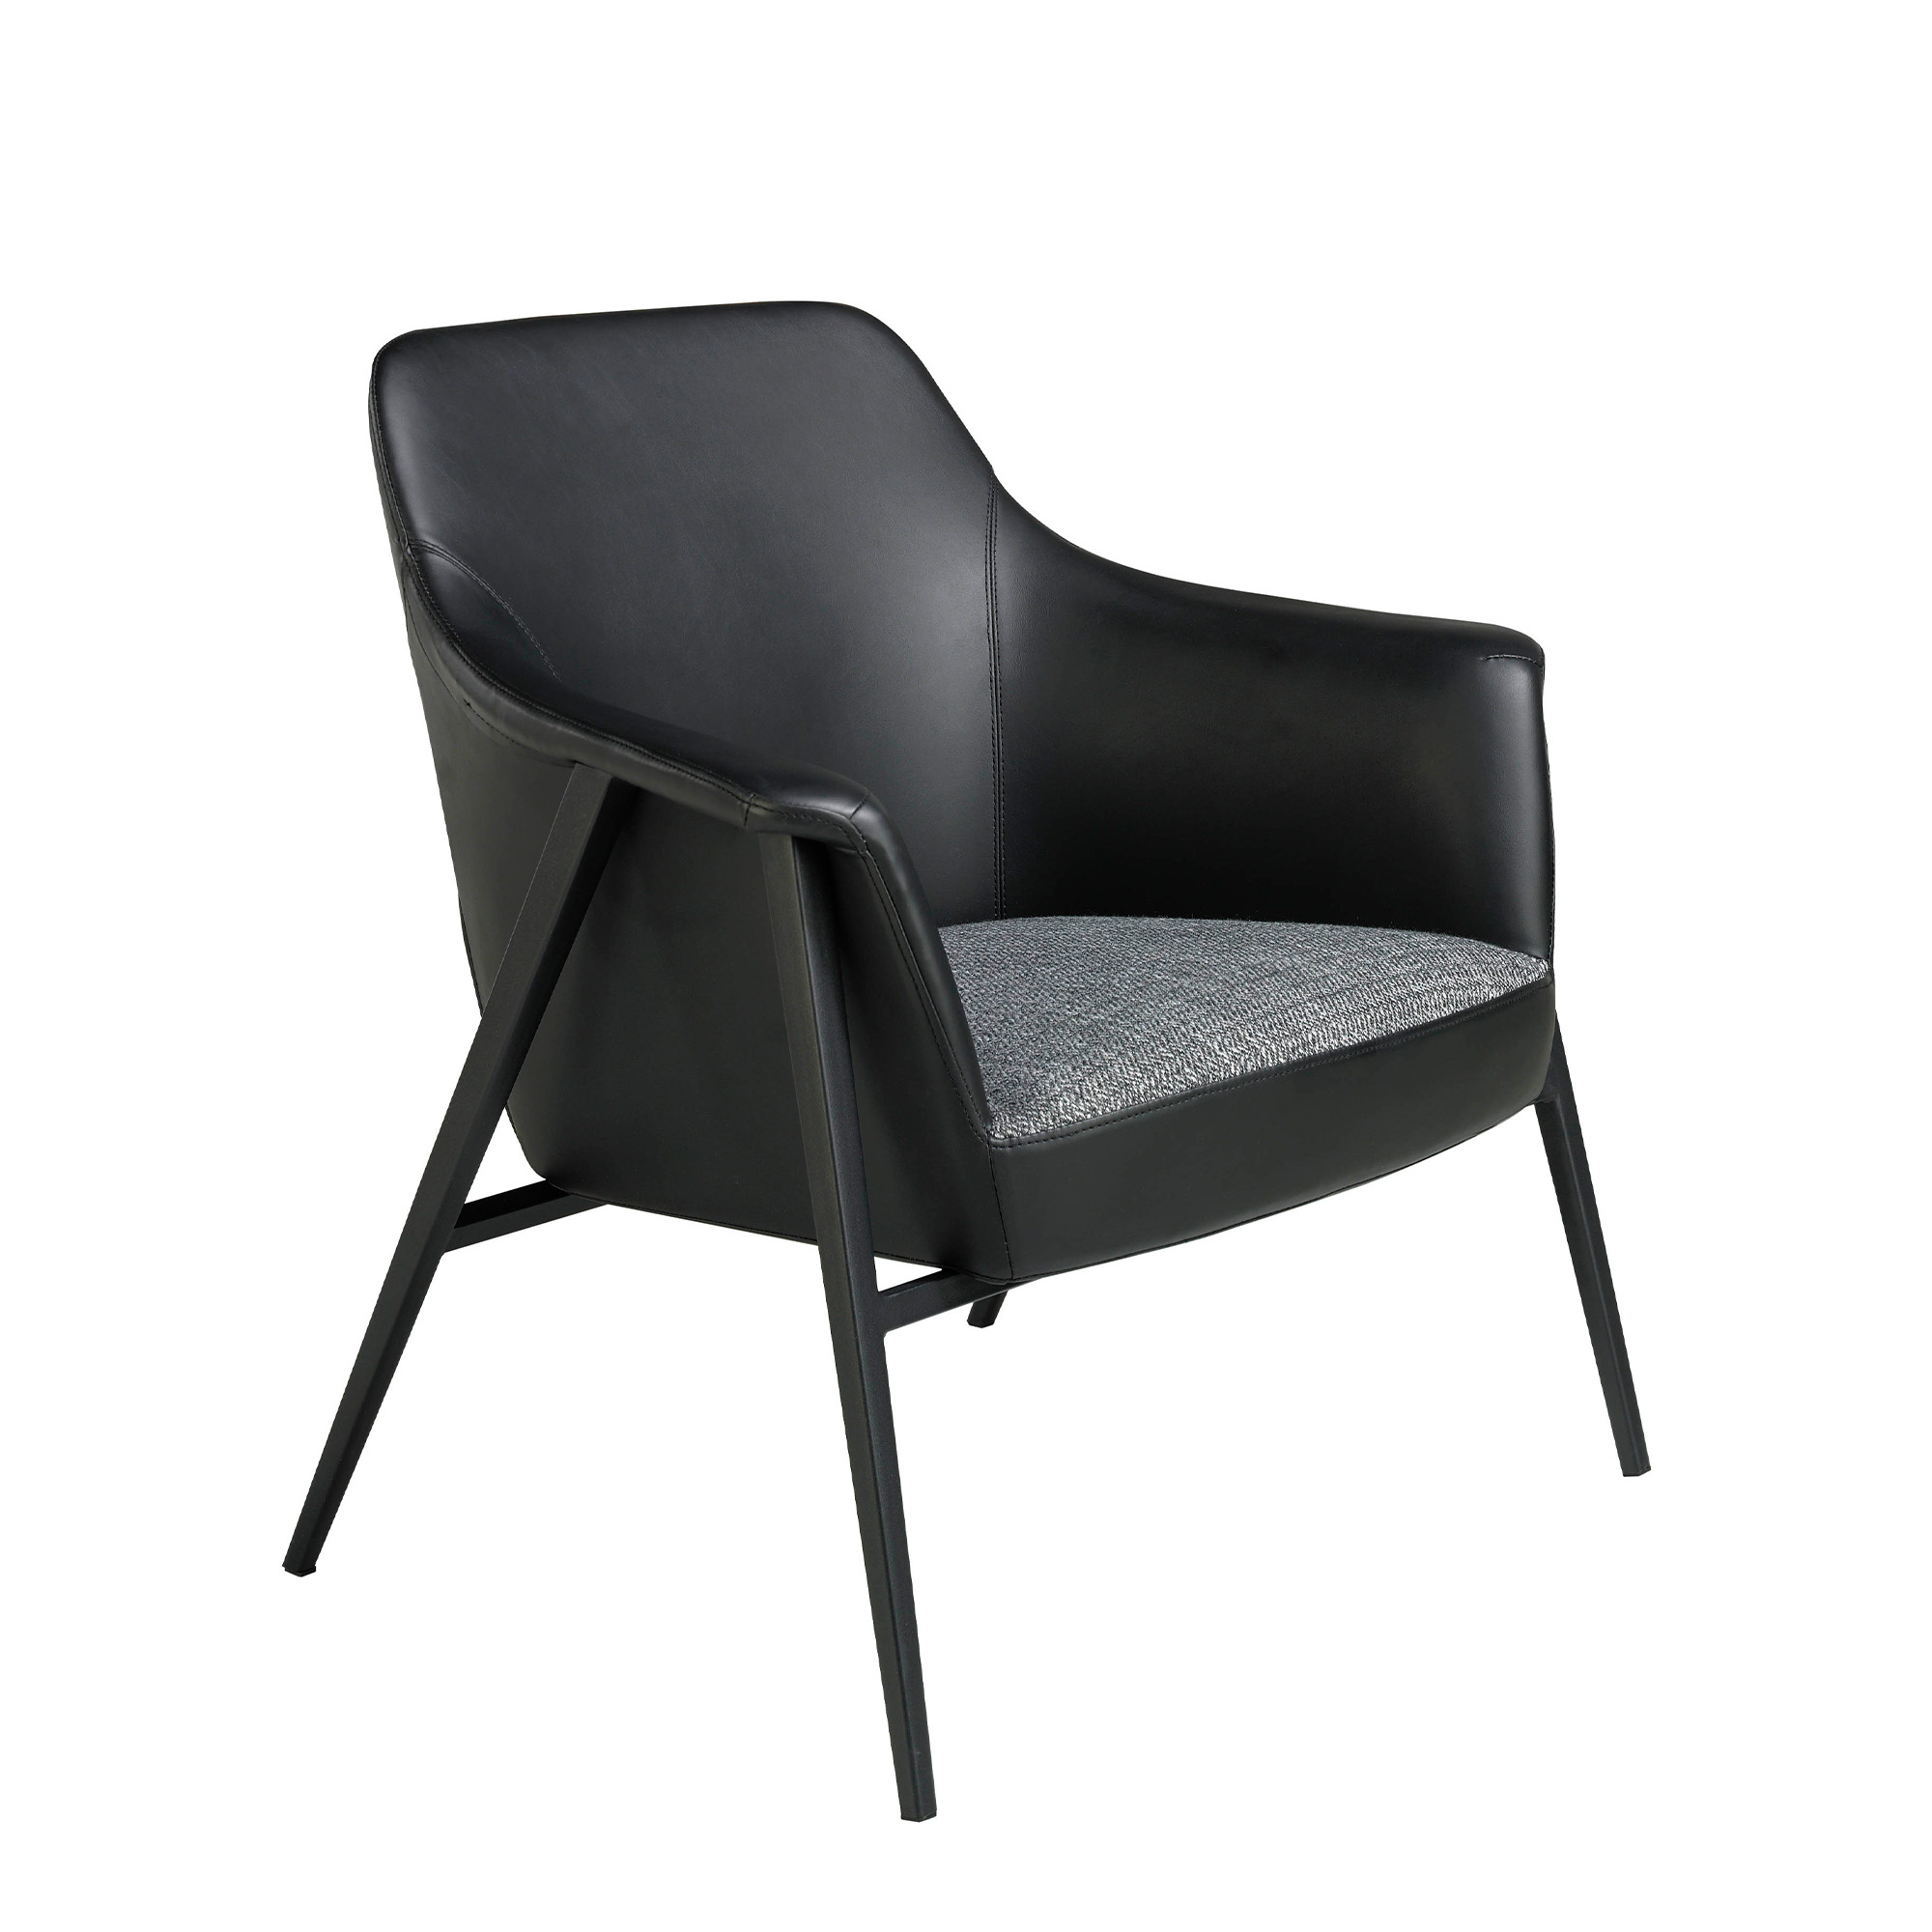 Sessel aus gepolstertem Stoff und Öko-Leder mit schwarzem Stahlgestell